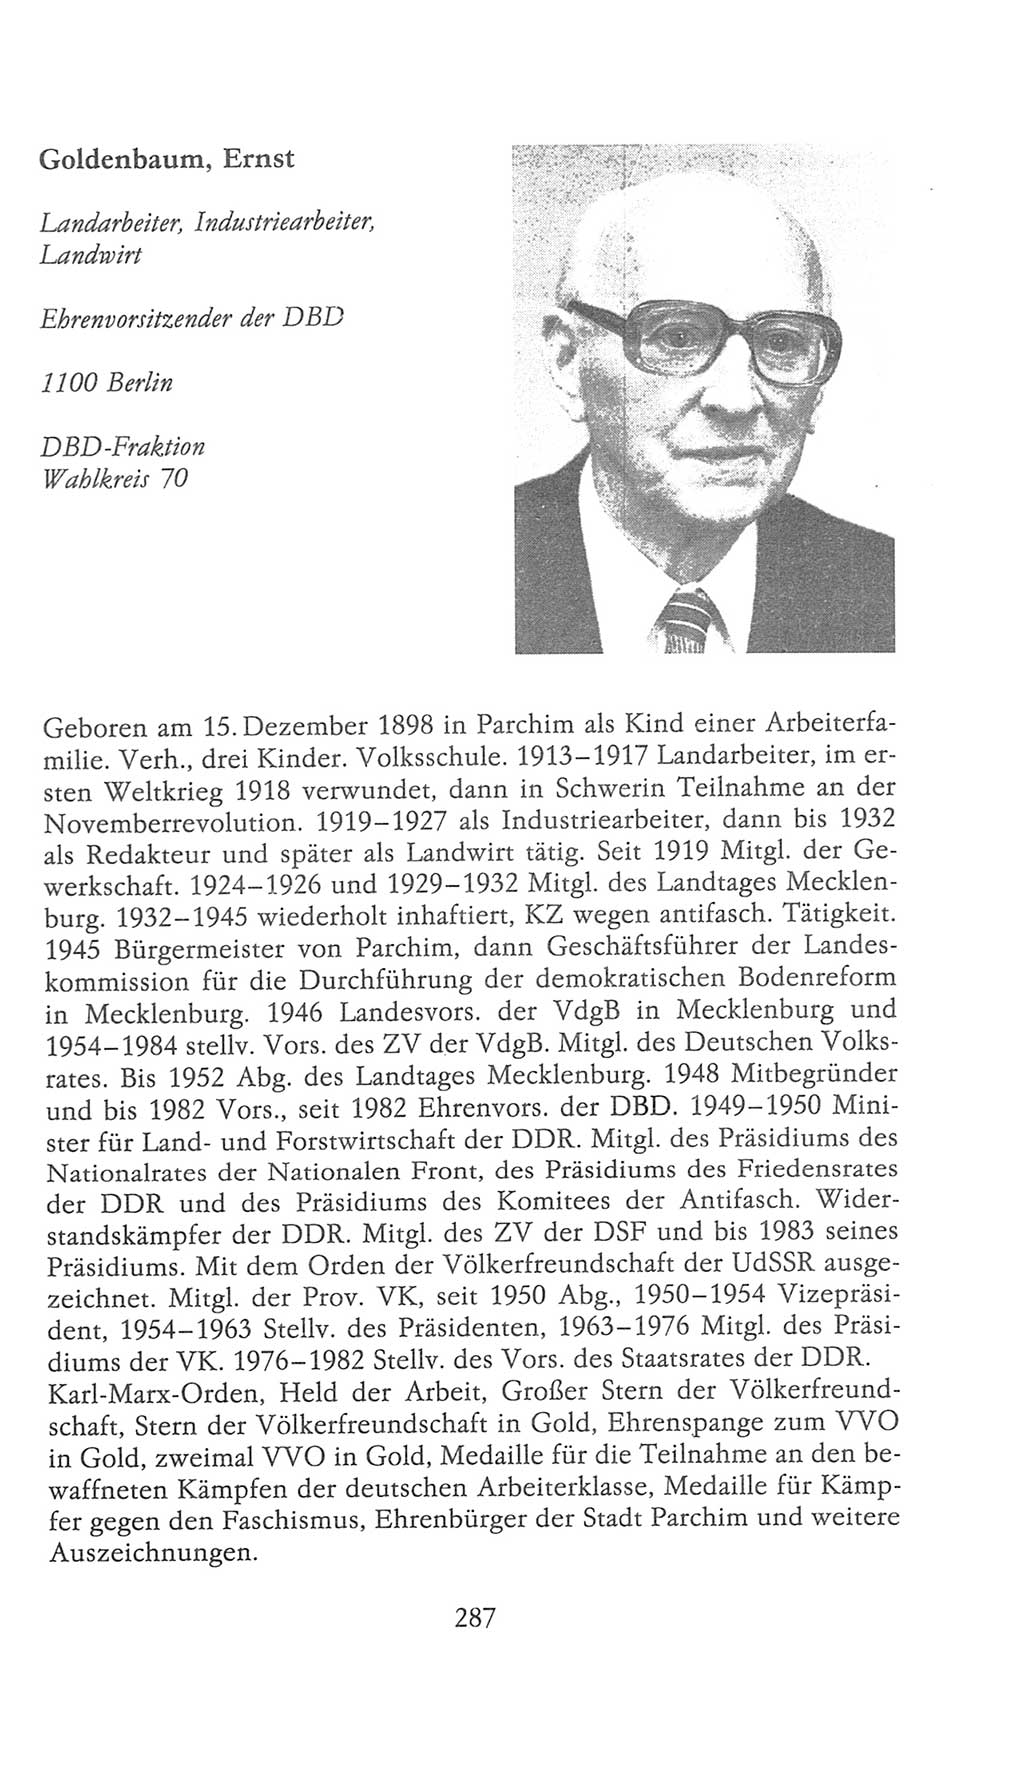 Volkskammer (VK) der Deutschen Demokratischen Republik (DDR), 9. Wahlperiode 1986-1990, Seite 287 (VK. DDR 9. WP. 1986-1990, S. 287)